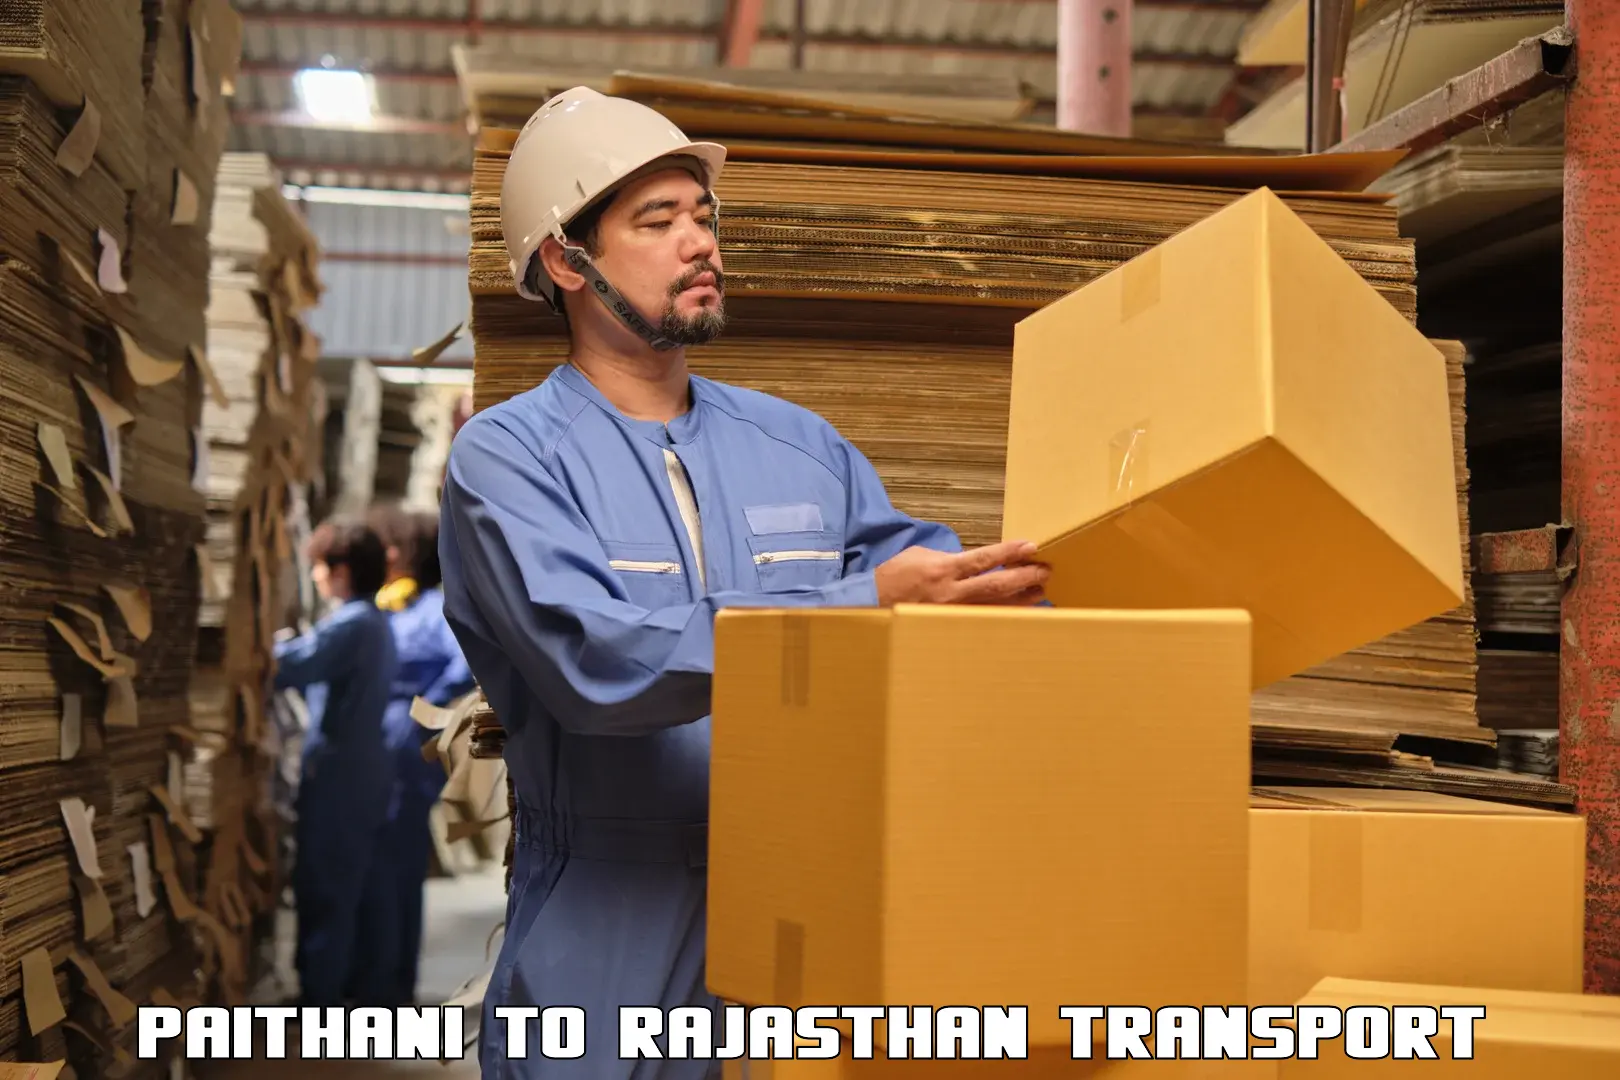 International cargo transportation services Paithani to Khinwara